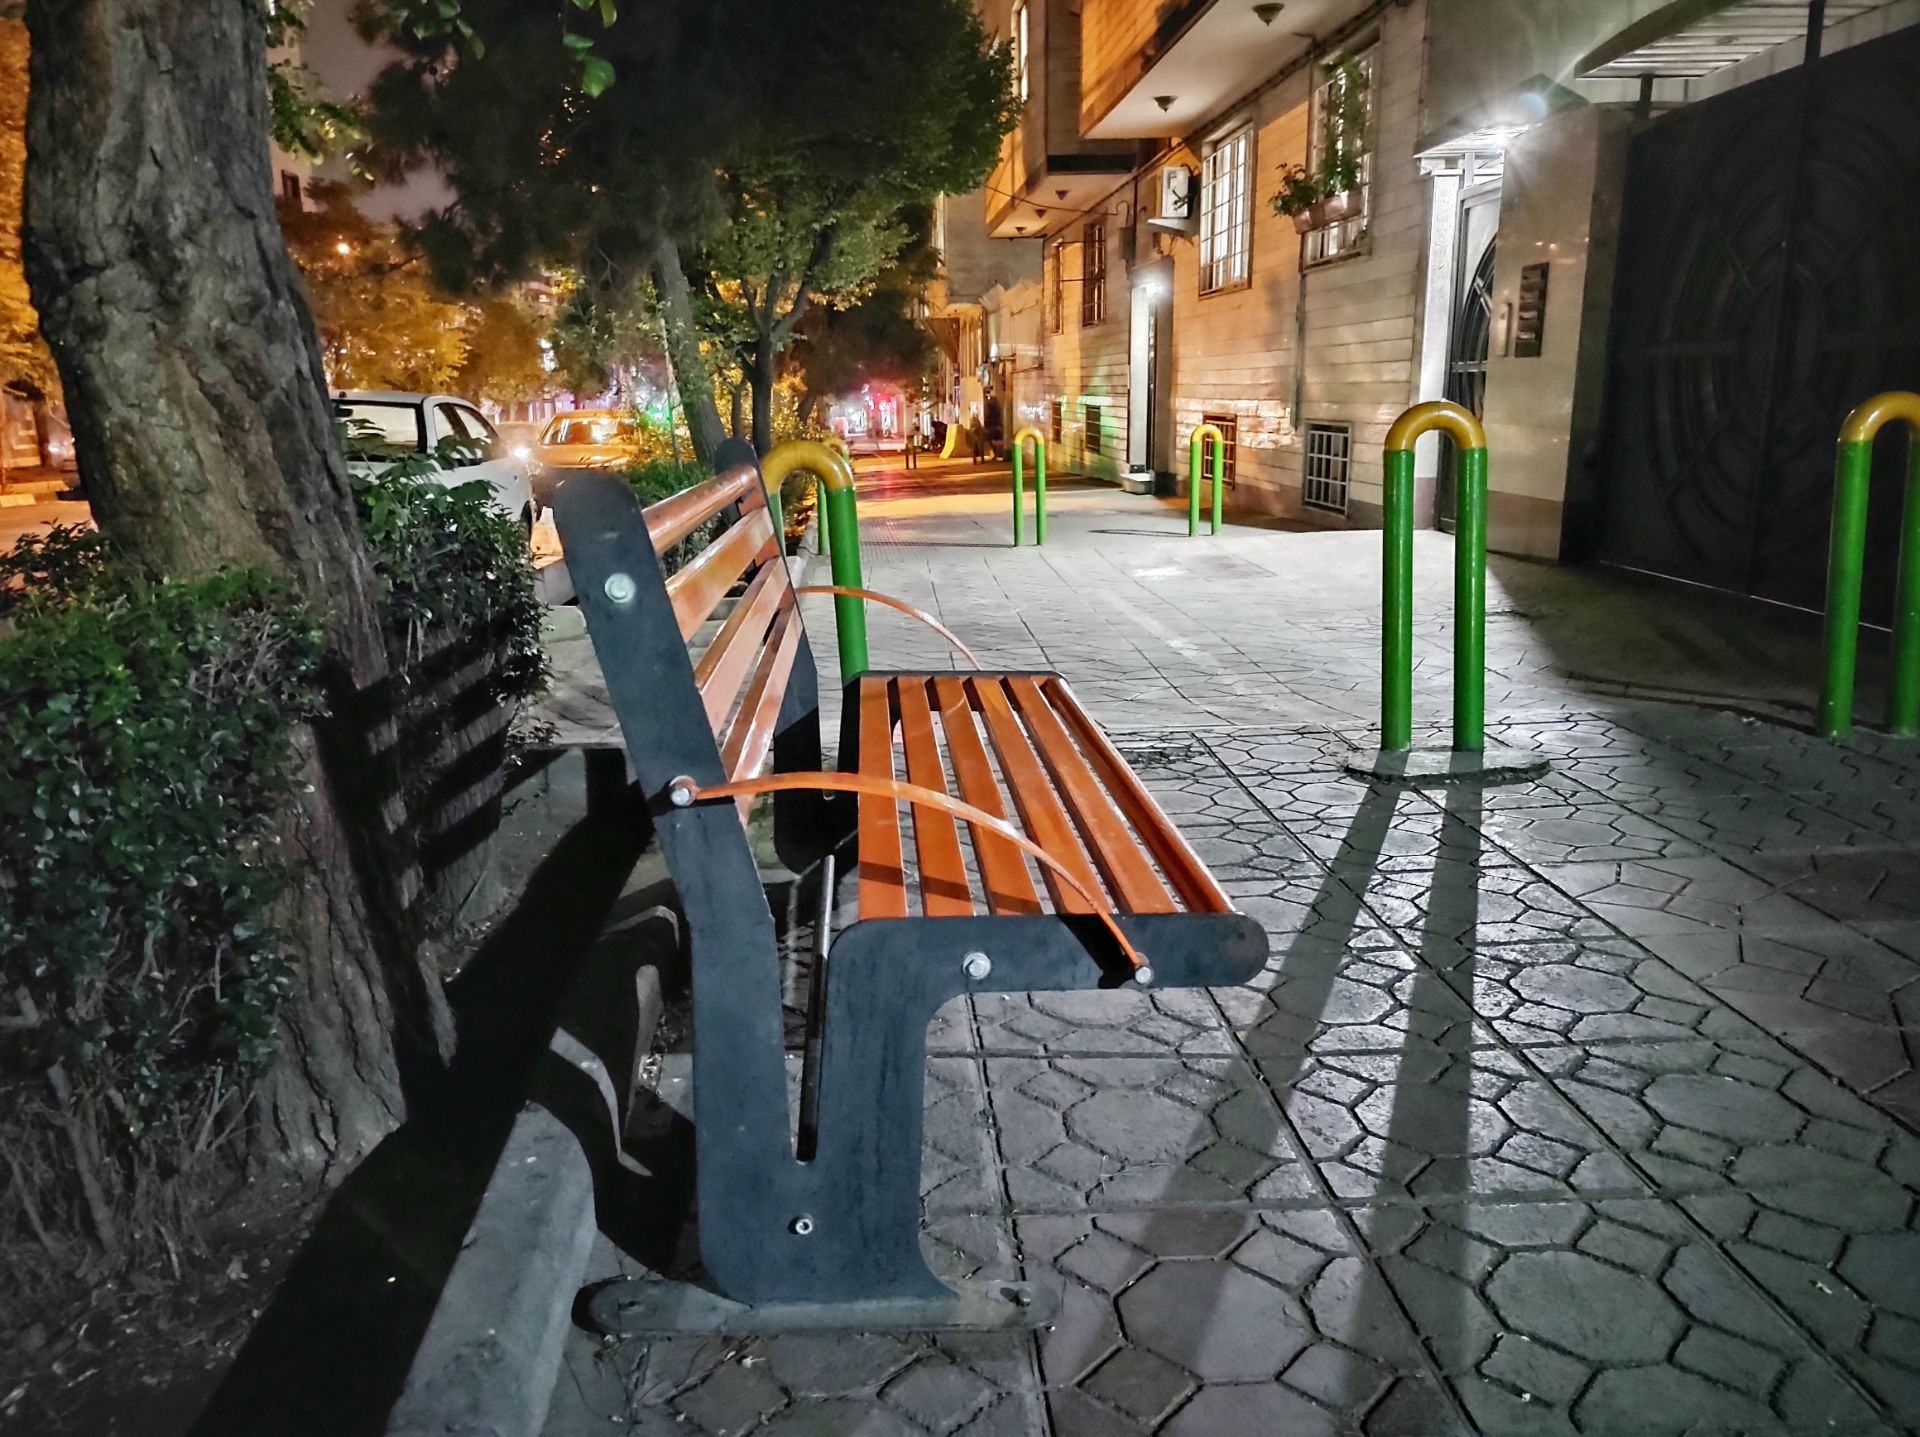 نمونه عکس دوربین اصلی موتورولا موتو جی ۹ پلاس در روز - صندلی در کنار خیابان